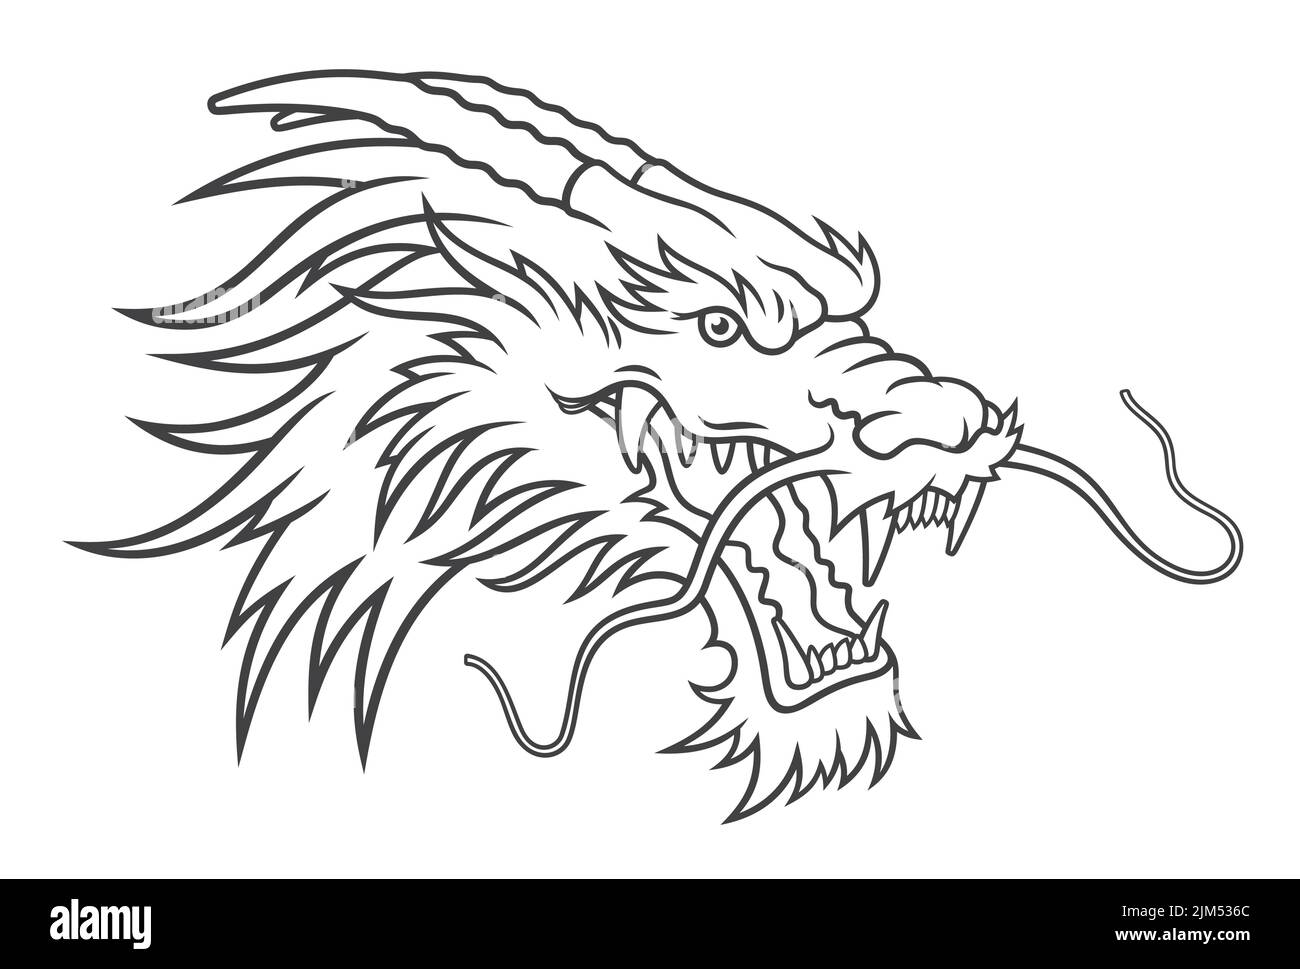 Schizzo della testa del drago. Illustrazione vettoriale Illustrazione Vettoriale